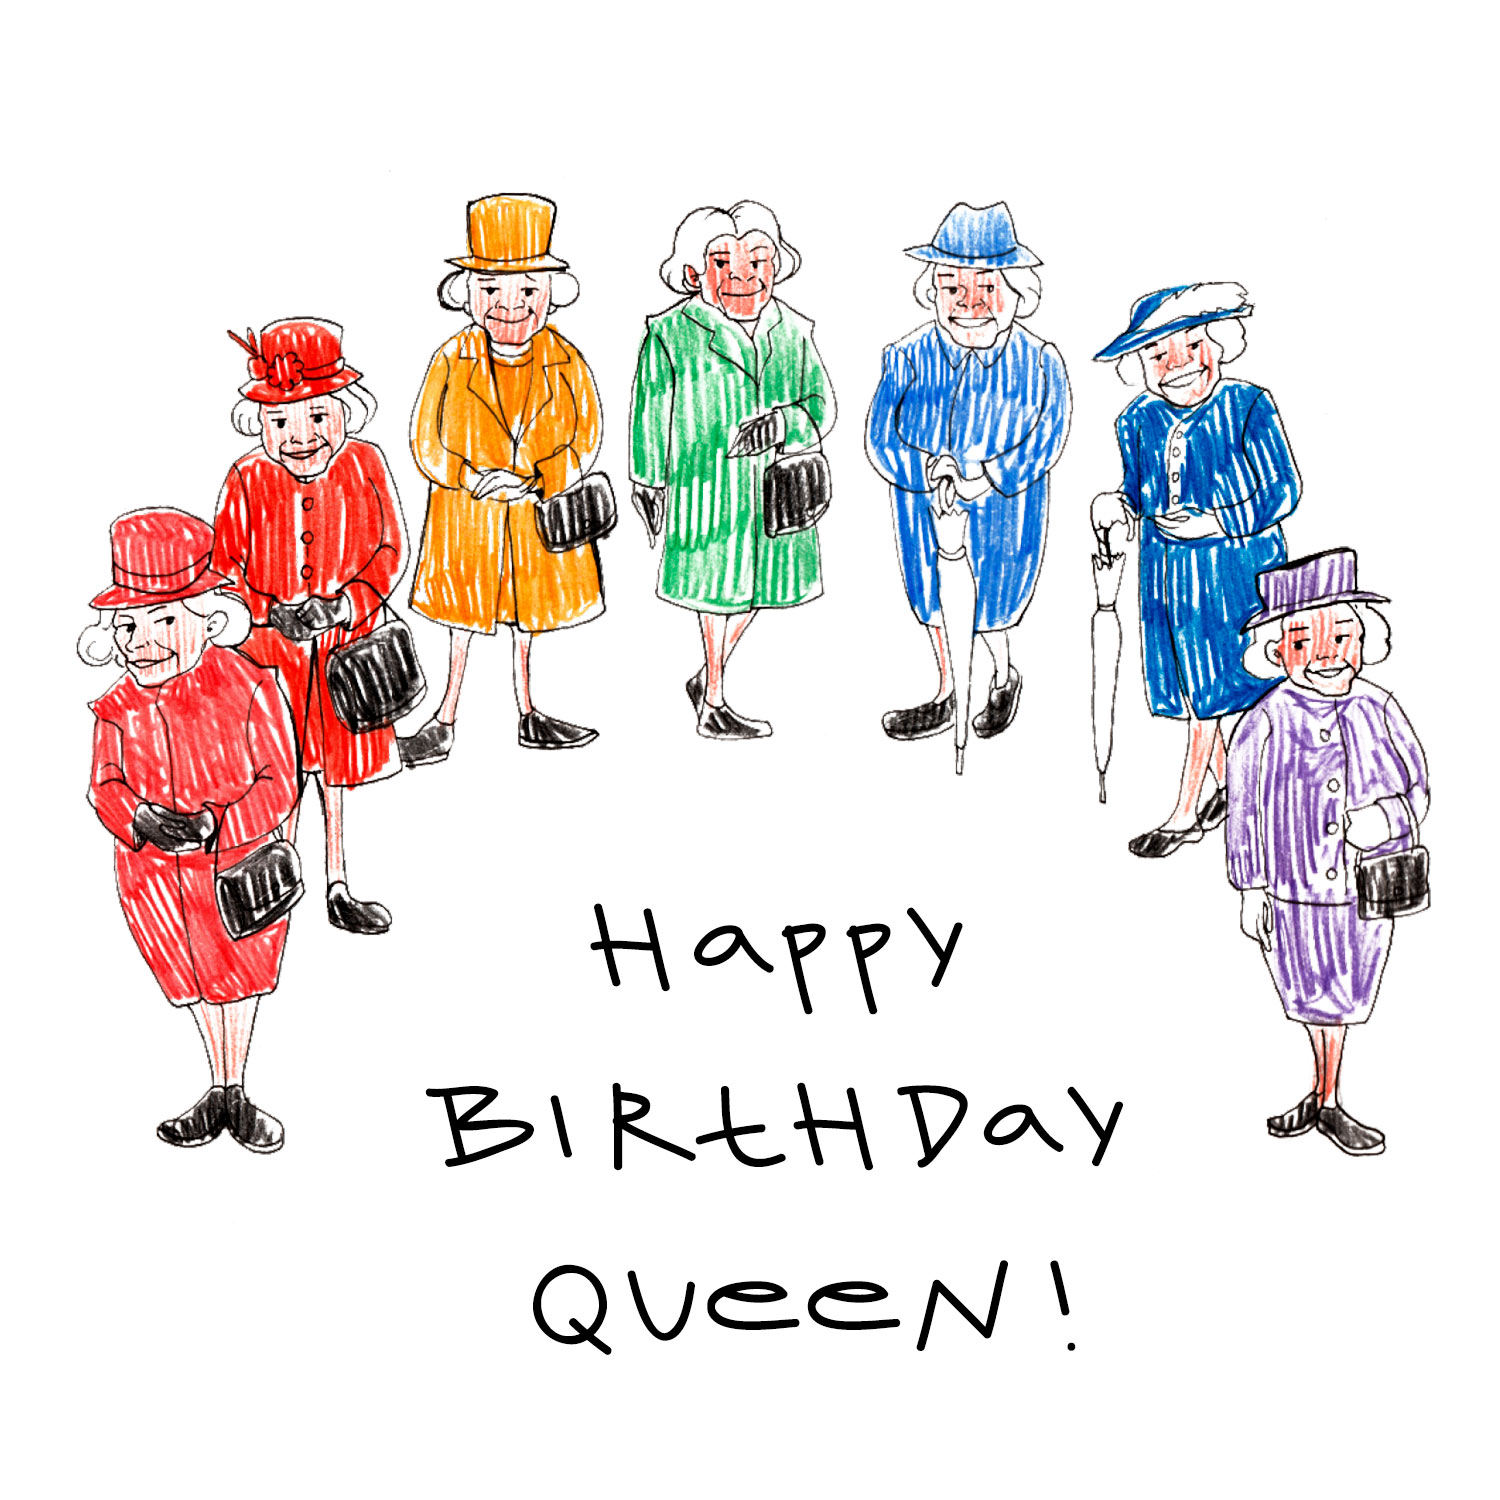 Queen is 94! Happy Birthday, Queen!